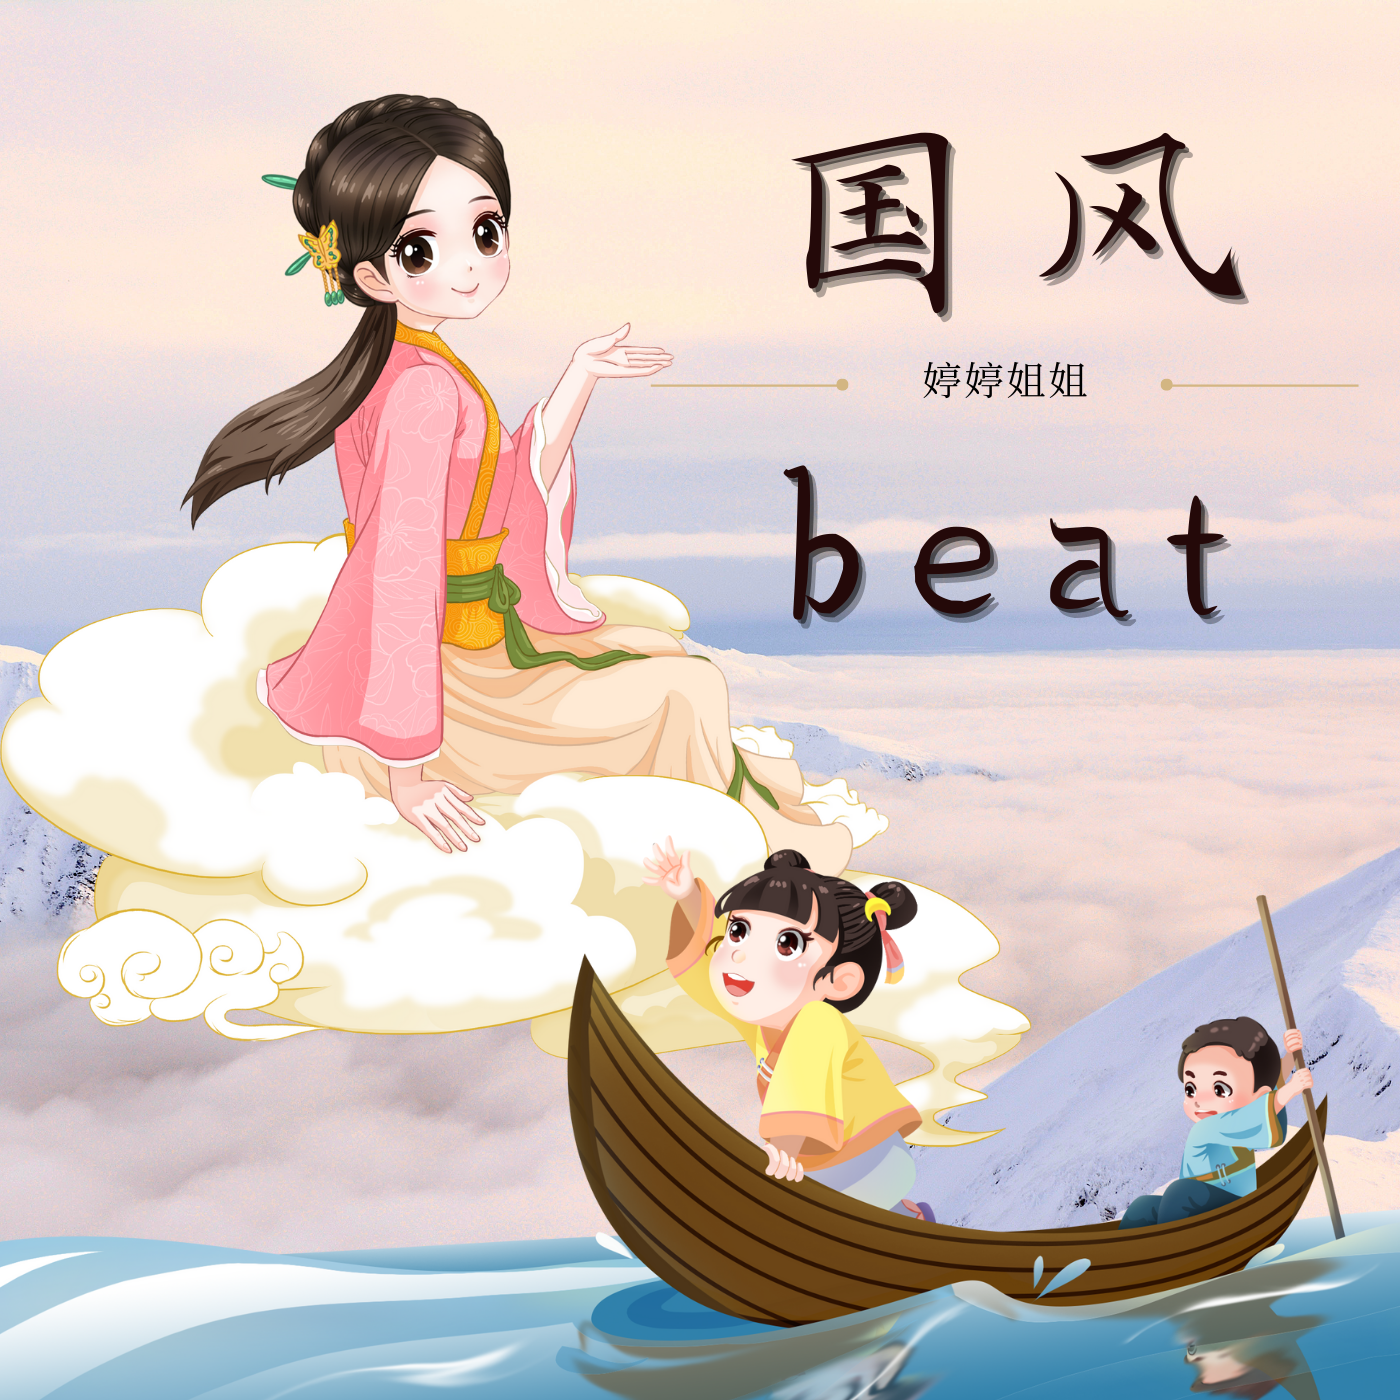 婷婷姐姐 - “爱莲说”-中国风/Chinese type beat-BPM152